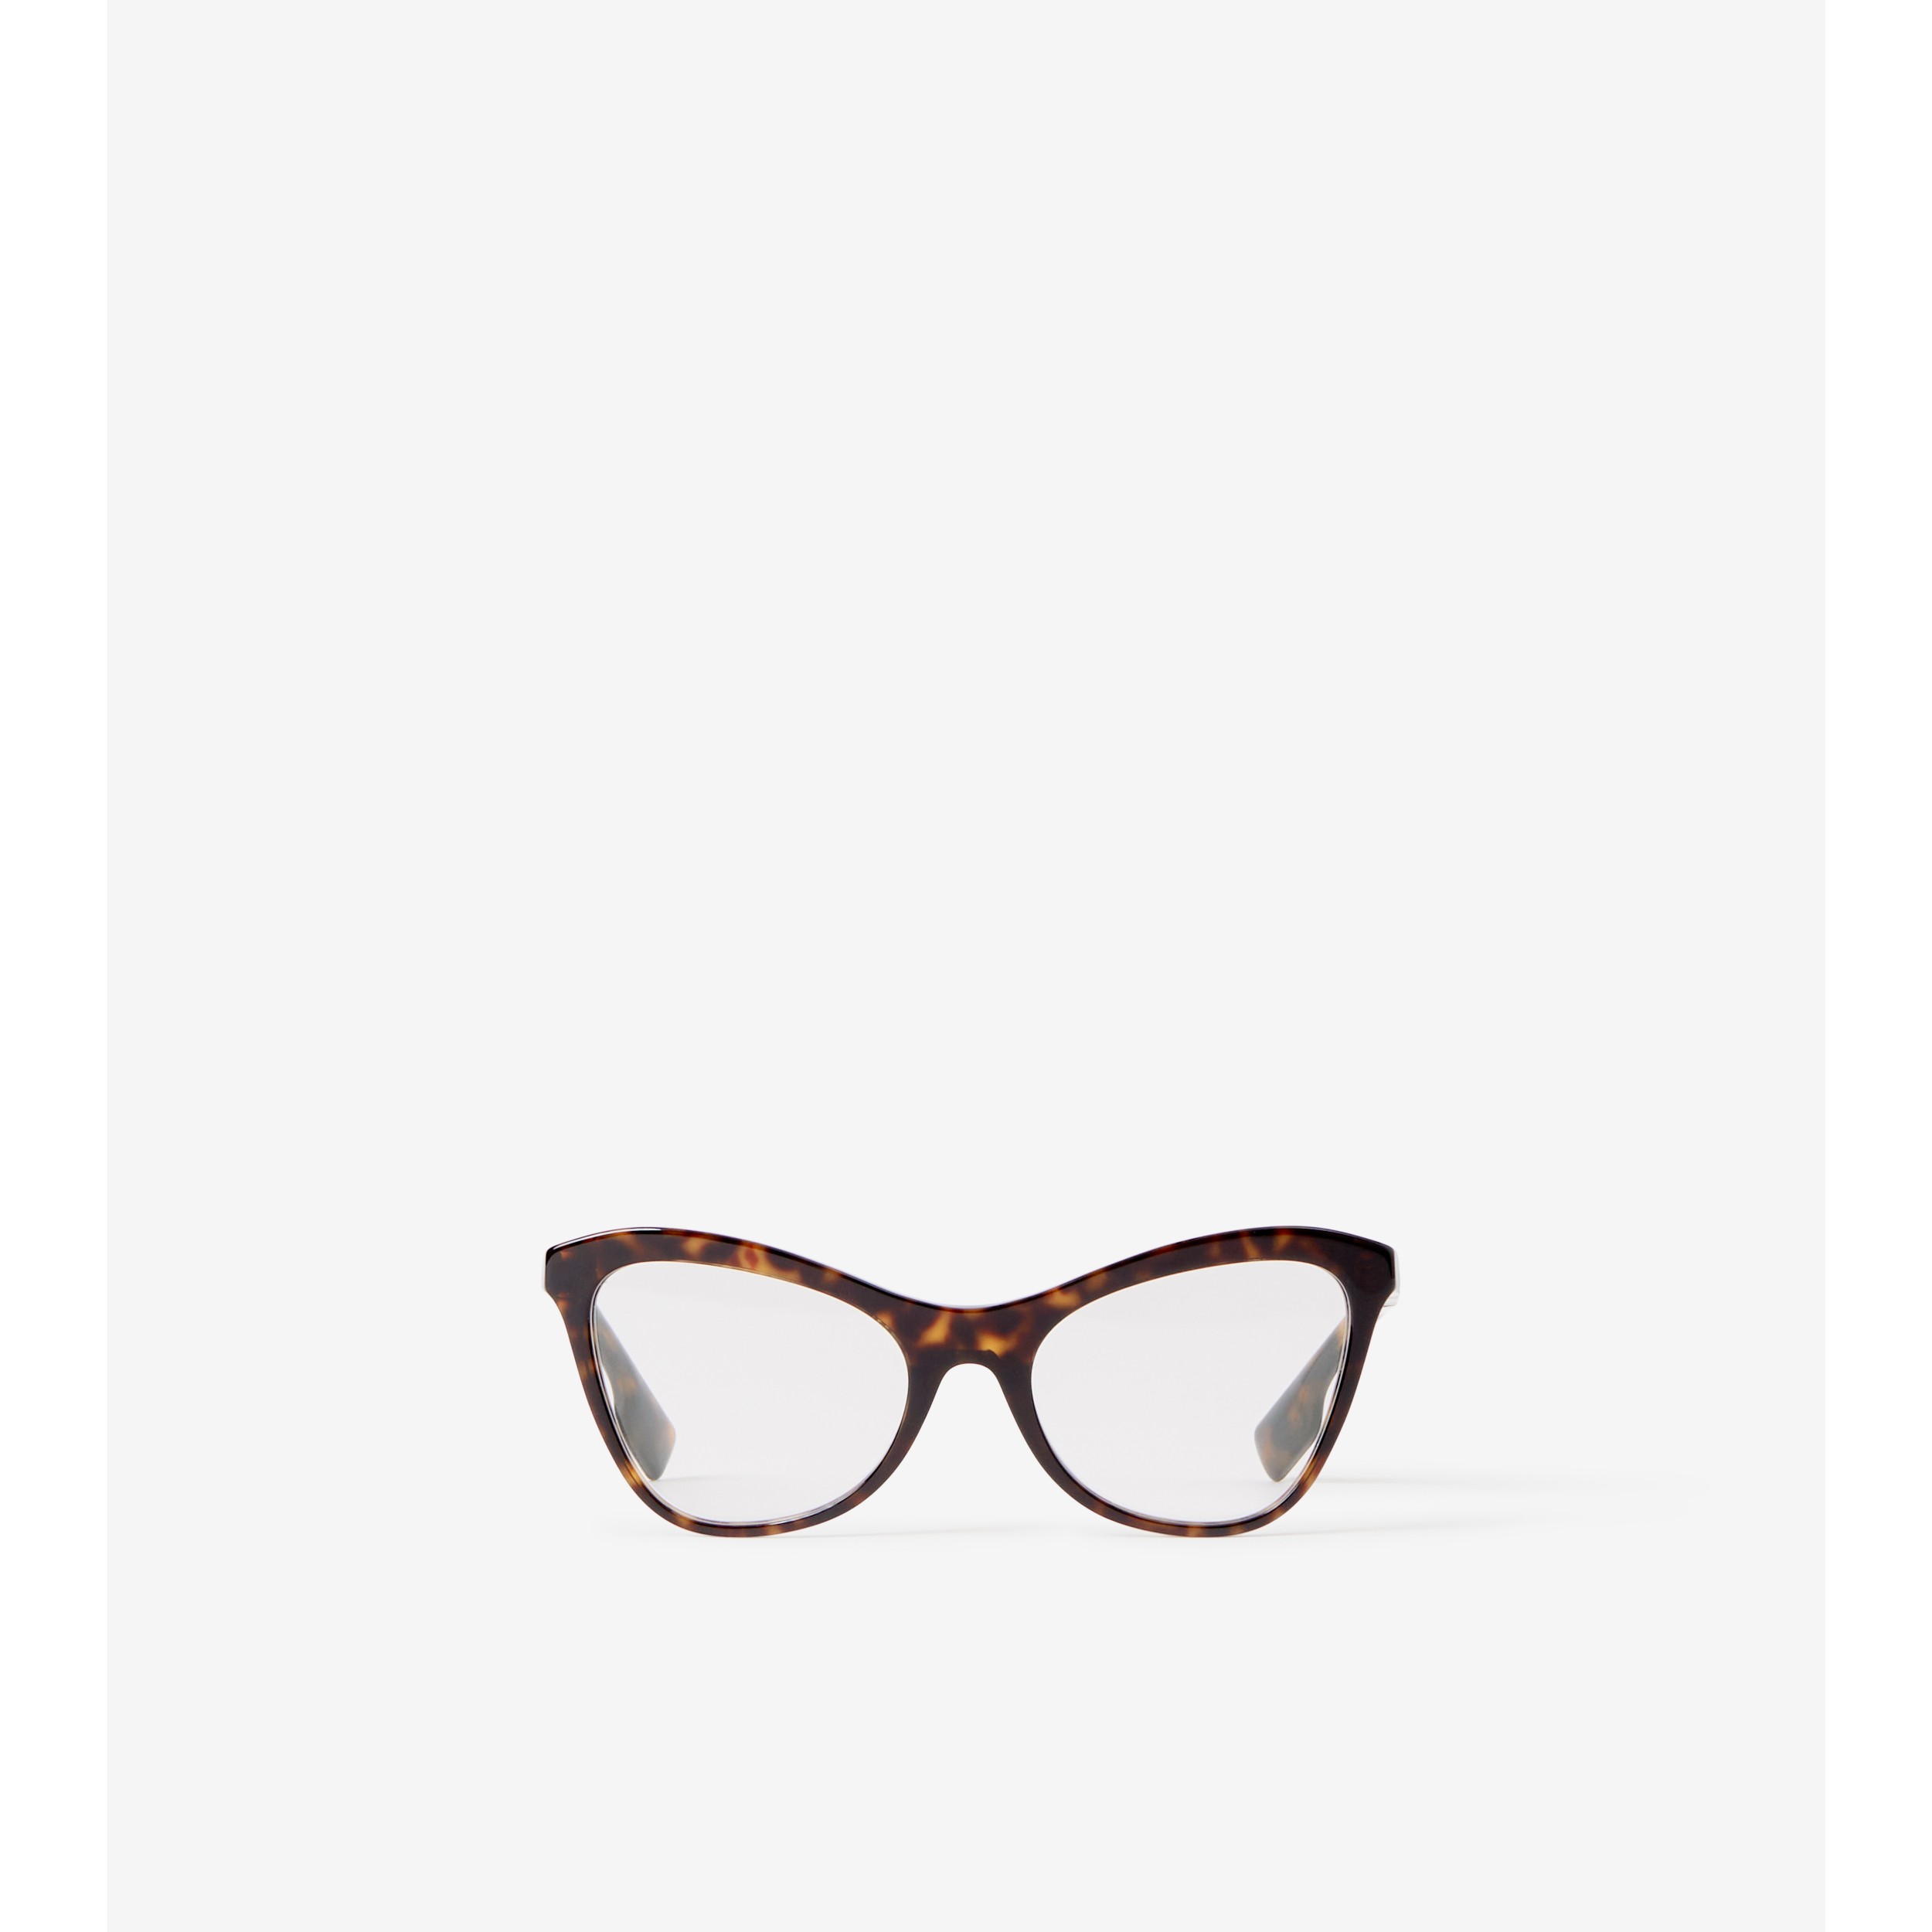 Cat-eye Frame Optical Glasses in Dark Tortoiseshell - Women